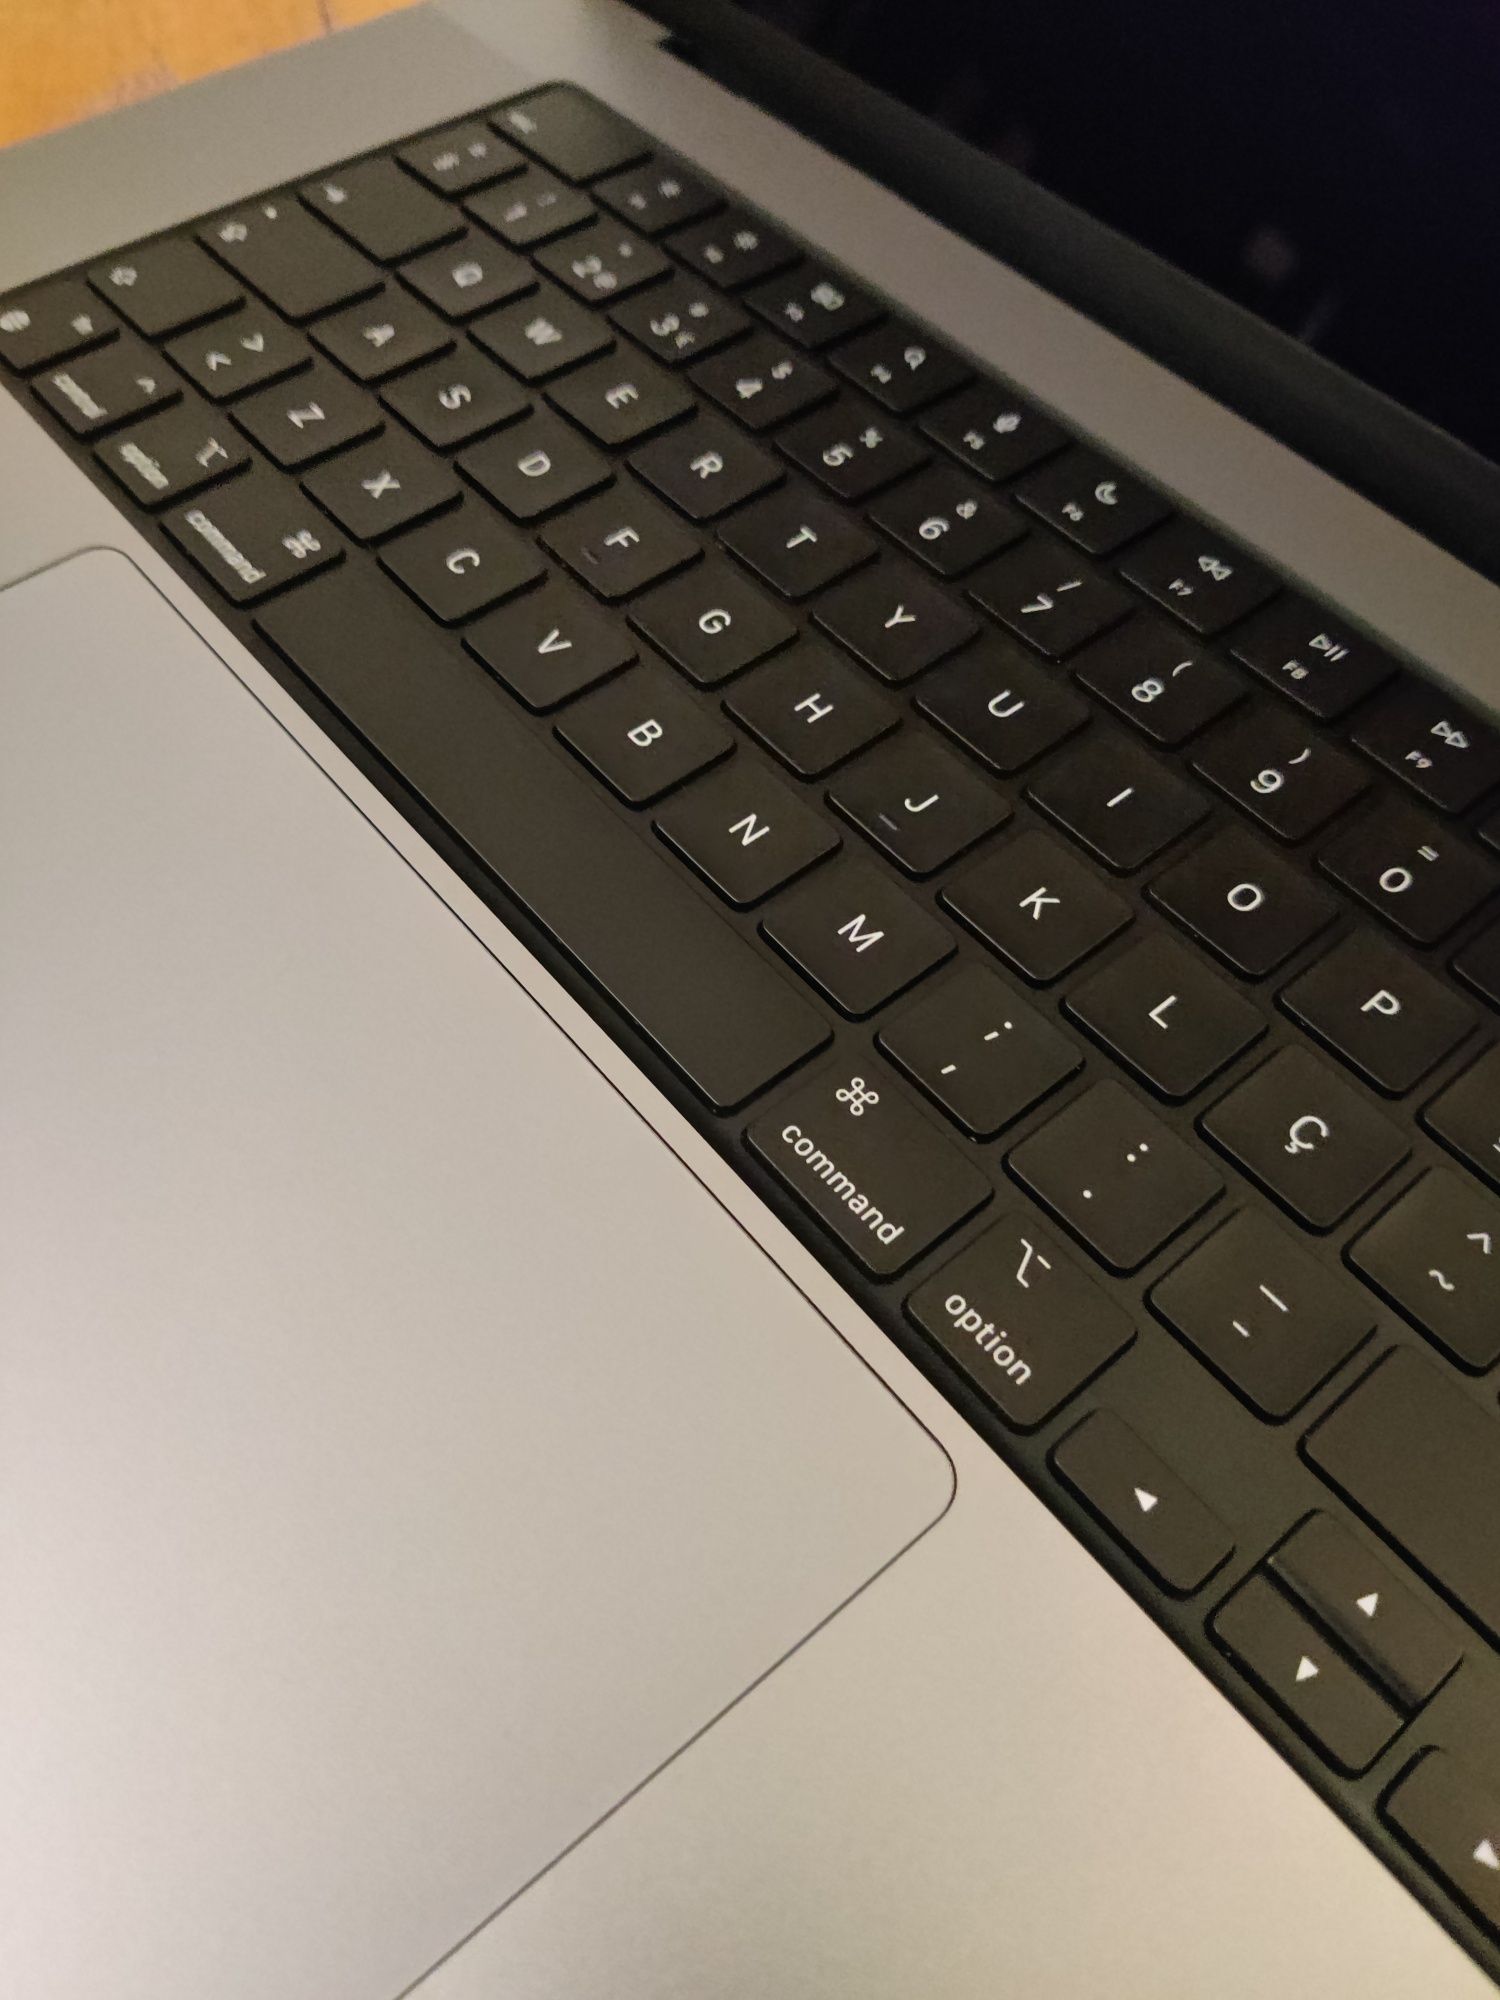 MacBook Pro M1 1Tb 16" 2021 [Bateria nova]